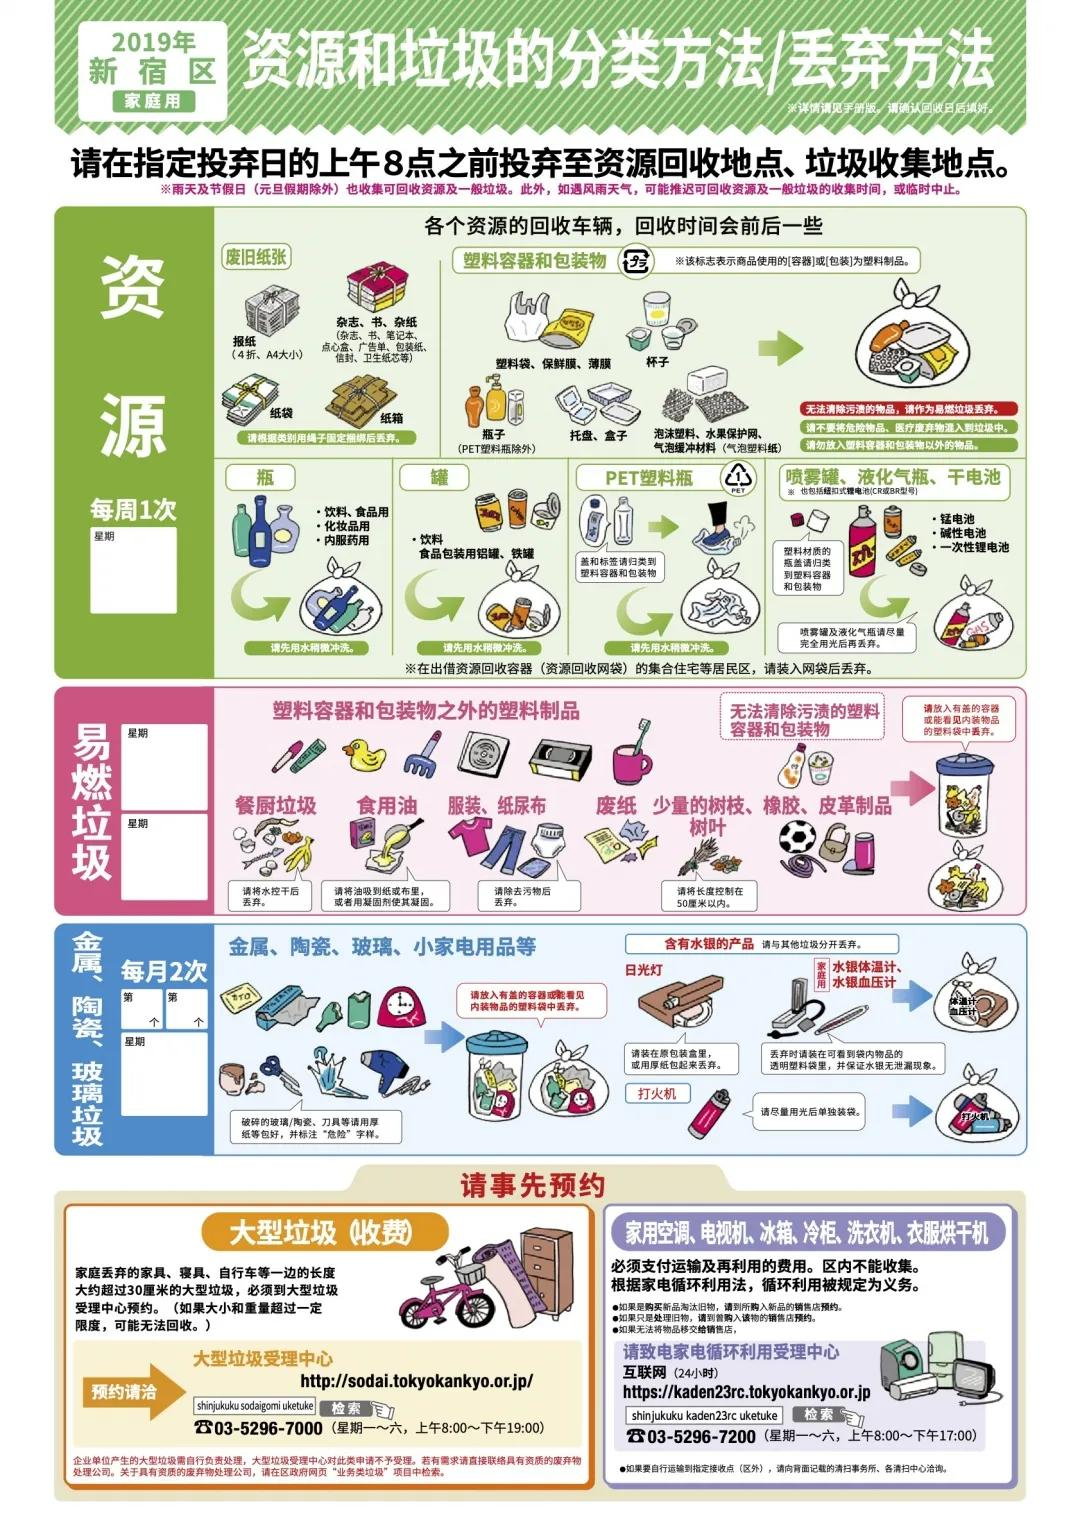 日本垃圾分类，细致到近乎“变态”